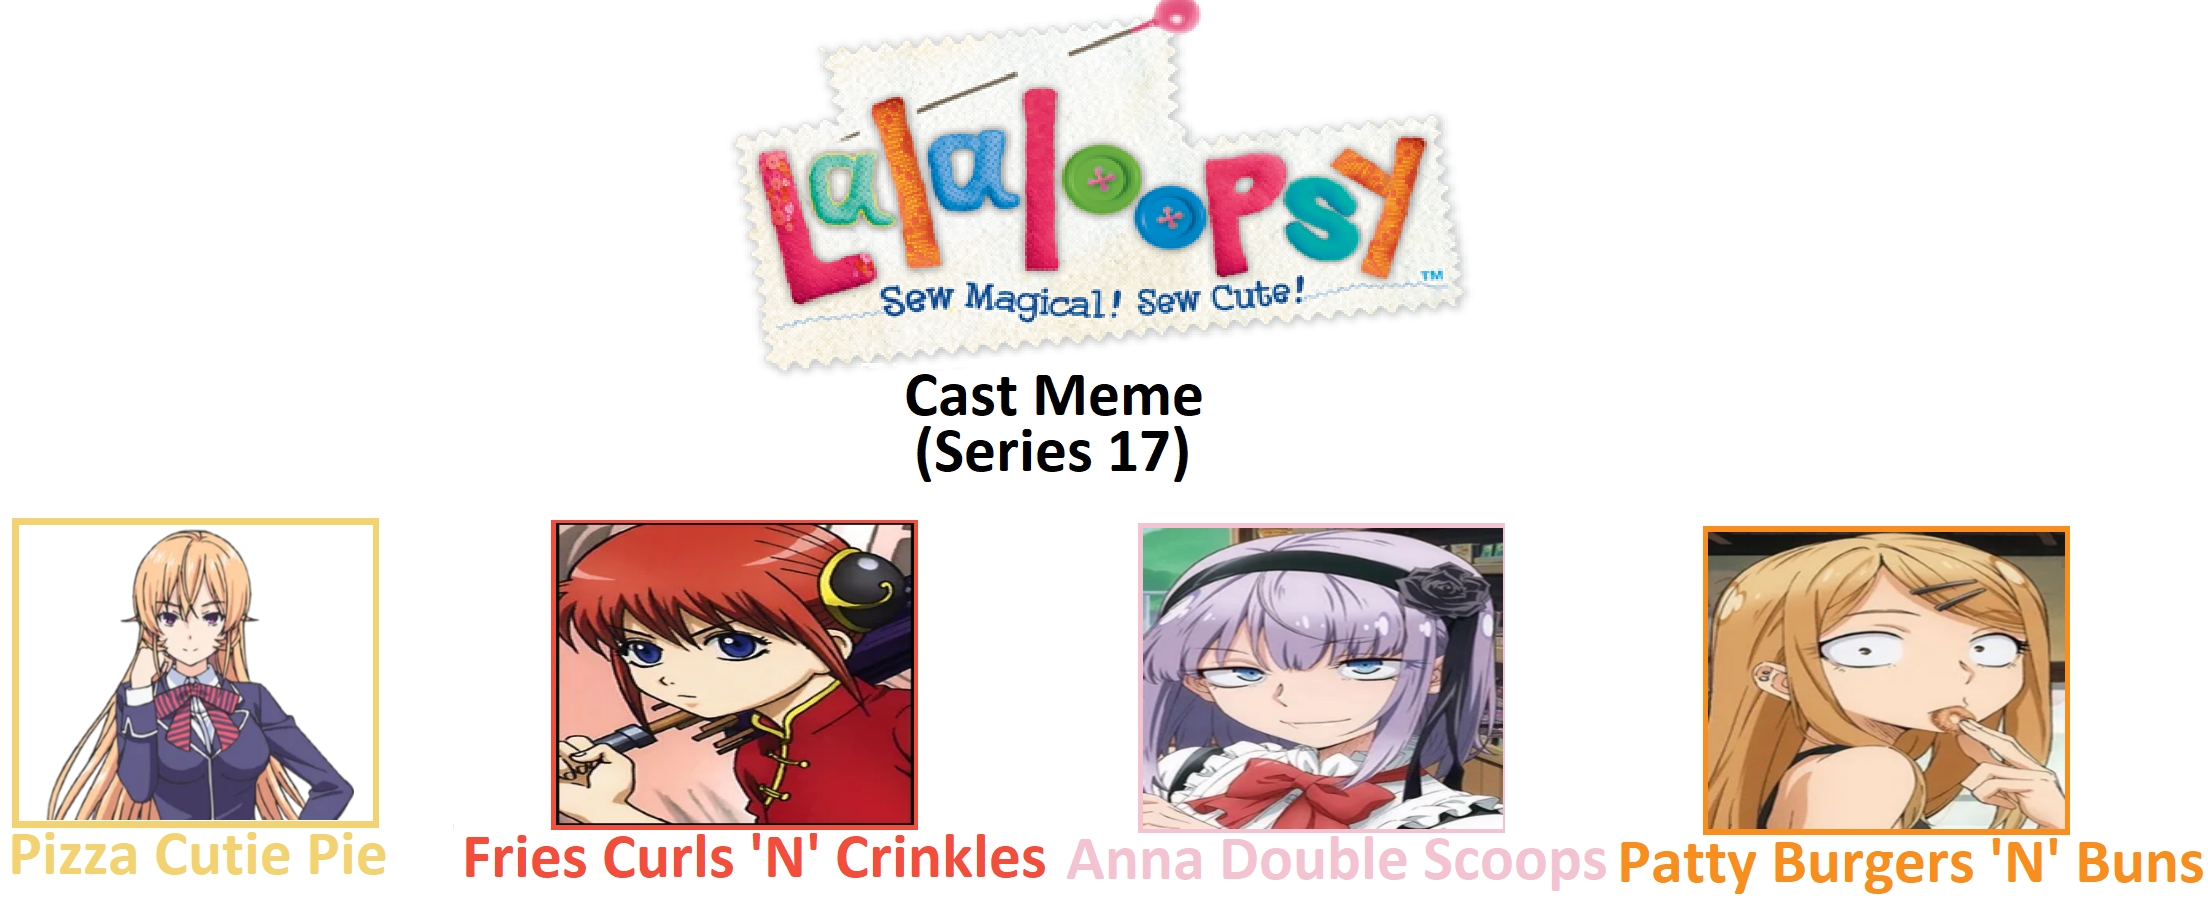 Anna Got No Chill - Cartoons & Anime - Anime, Cartoons, Anime Memes, Cartoon Memes